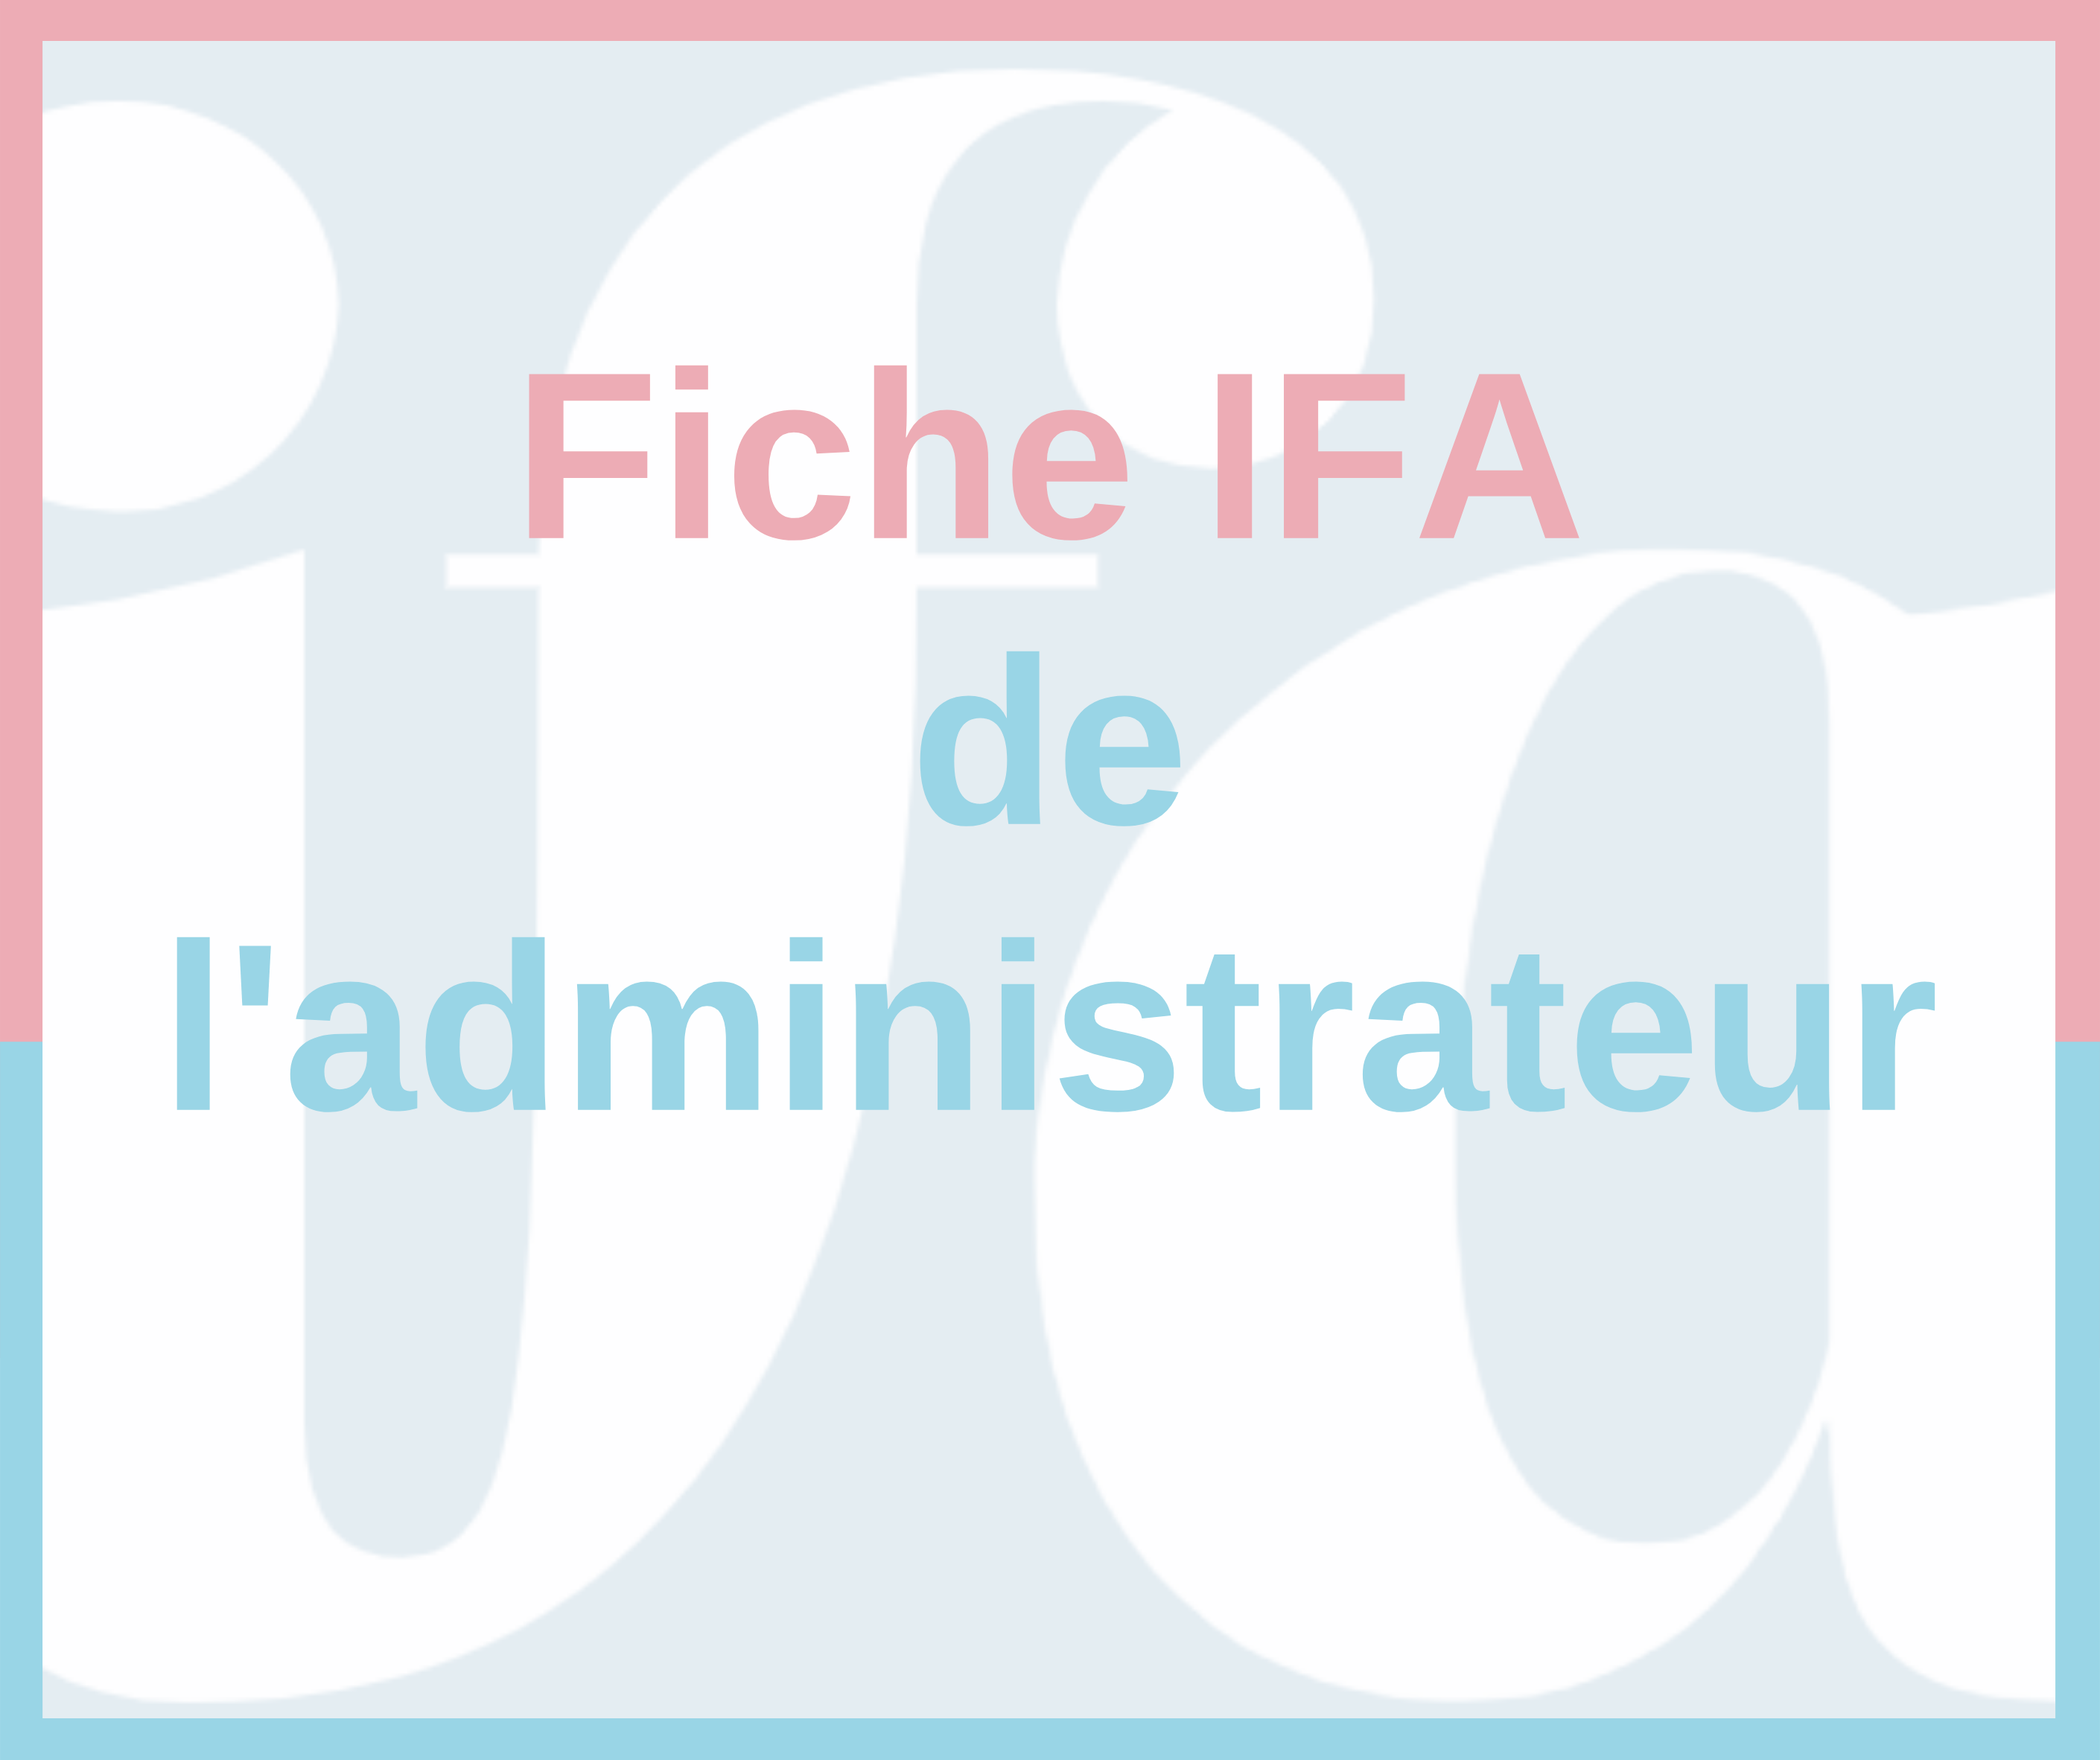 Fiche IFA - Déclaration de performance extra financière (DPEF)